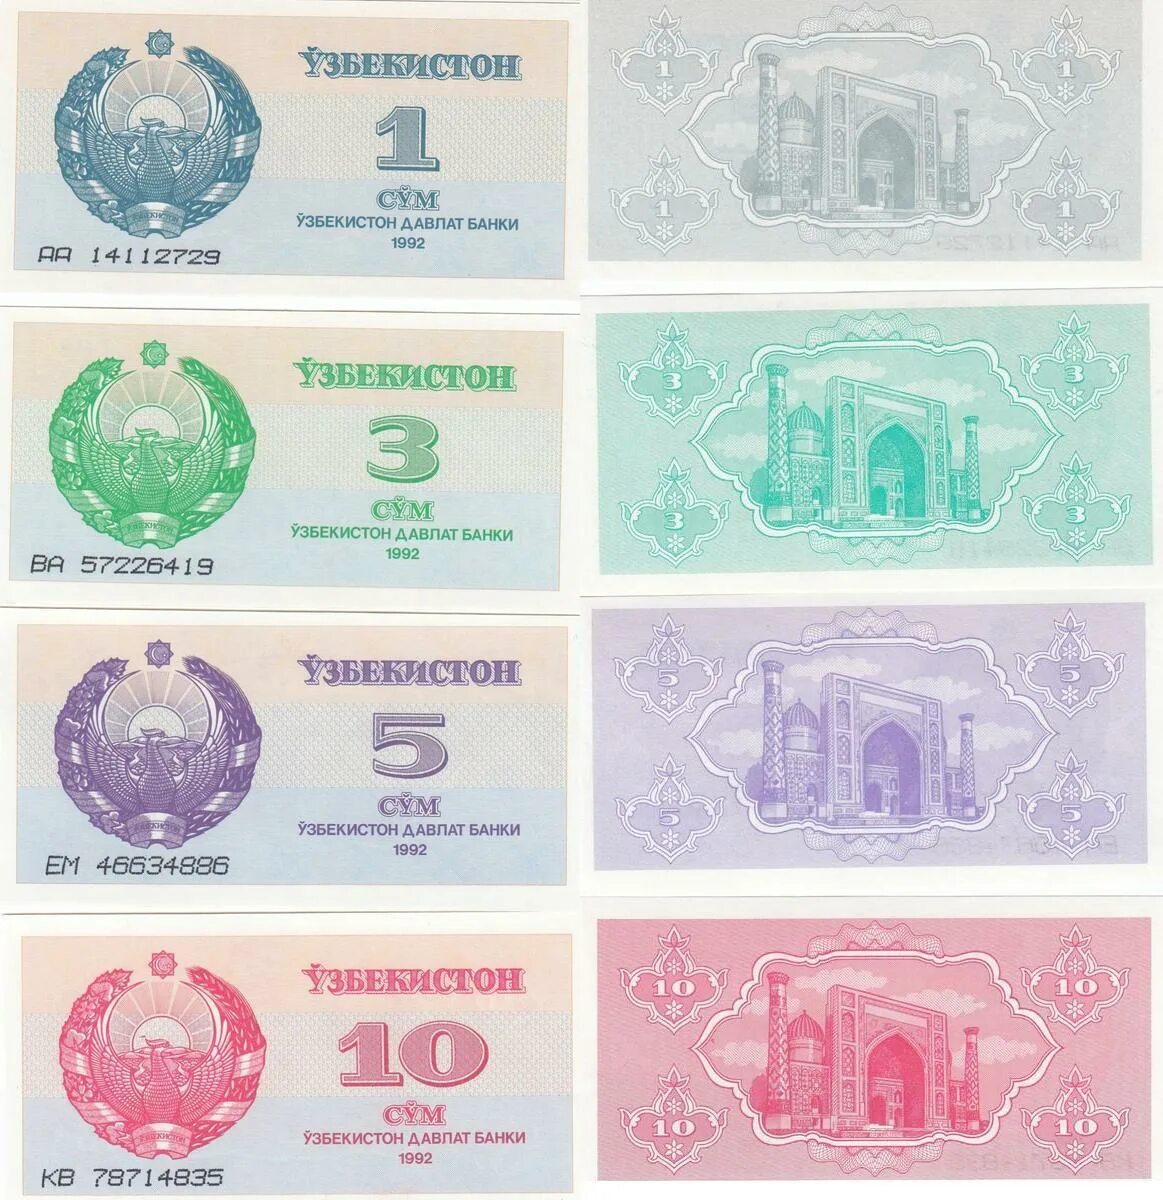 Банкнота Узбекистан 1. Банкнота 5 Узбекистан. Купюры Узбекистана крупные. Водяные знаки на купюрах Узбекистана. Суммы купюры